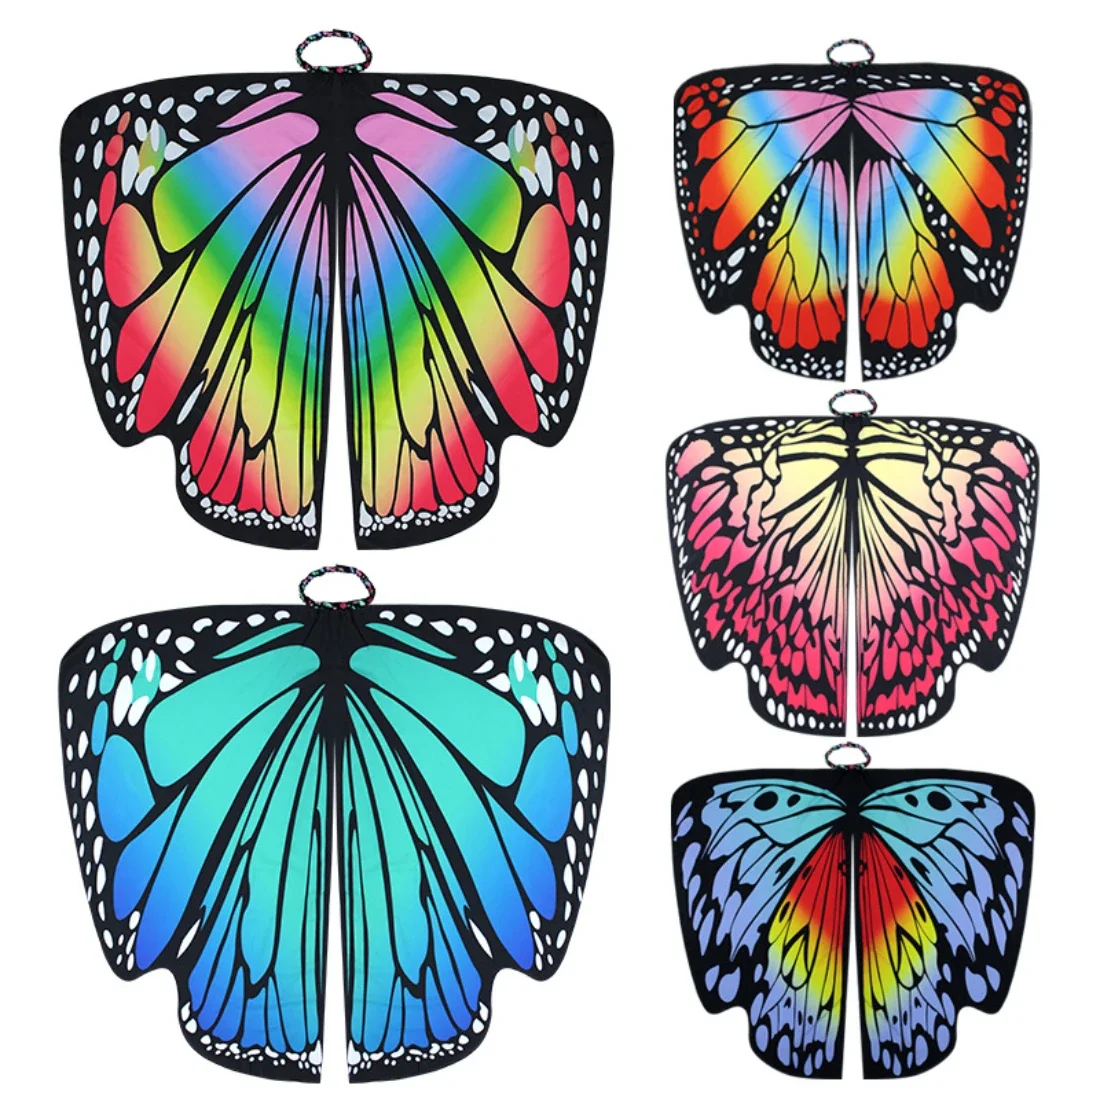 

Хэллоуин крылья бабочки взрослый костюм косплей накидка бабочка костюм плащ показать костюм маскарадный мяч искусственные подарки